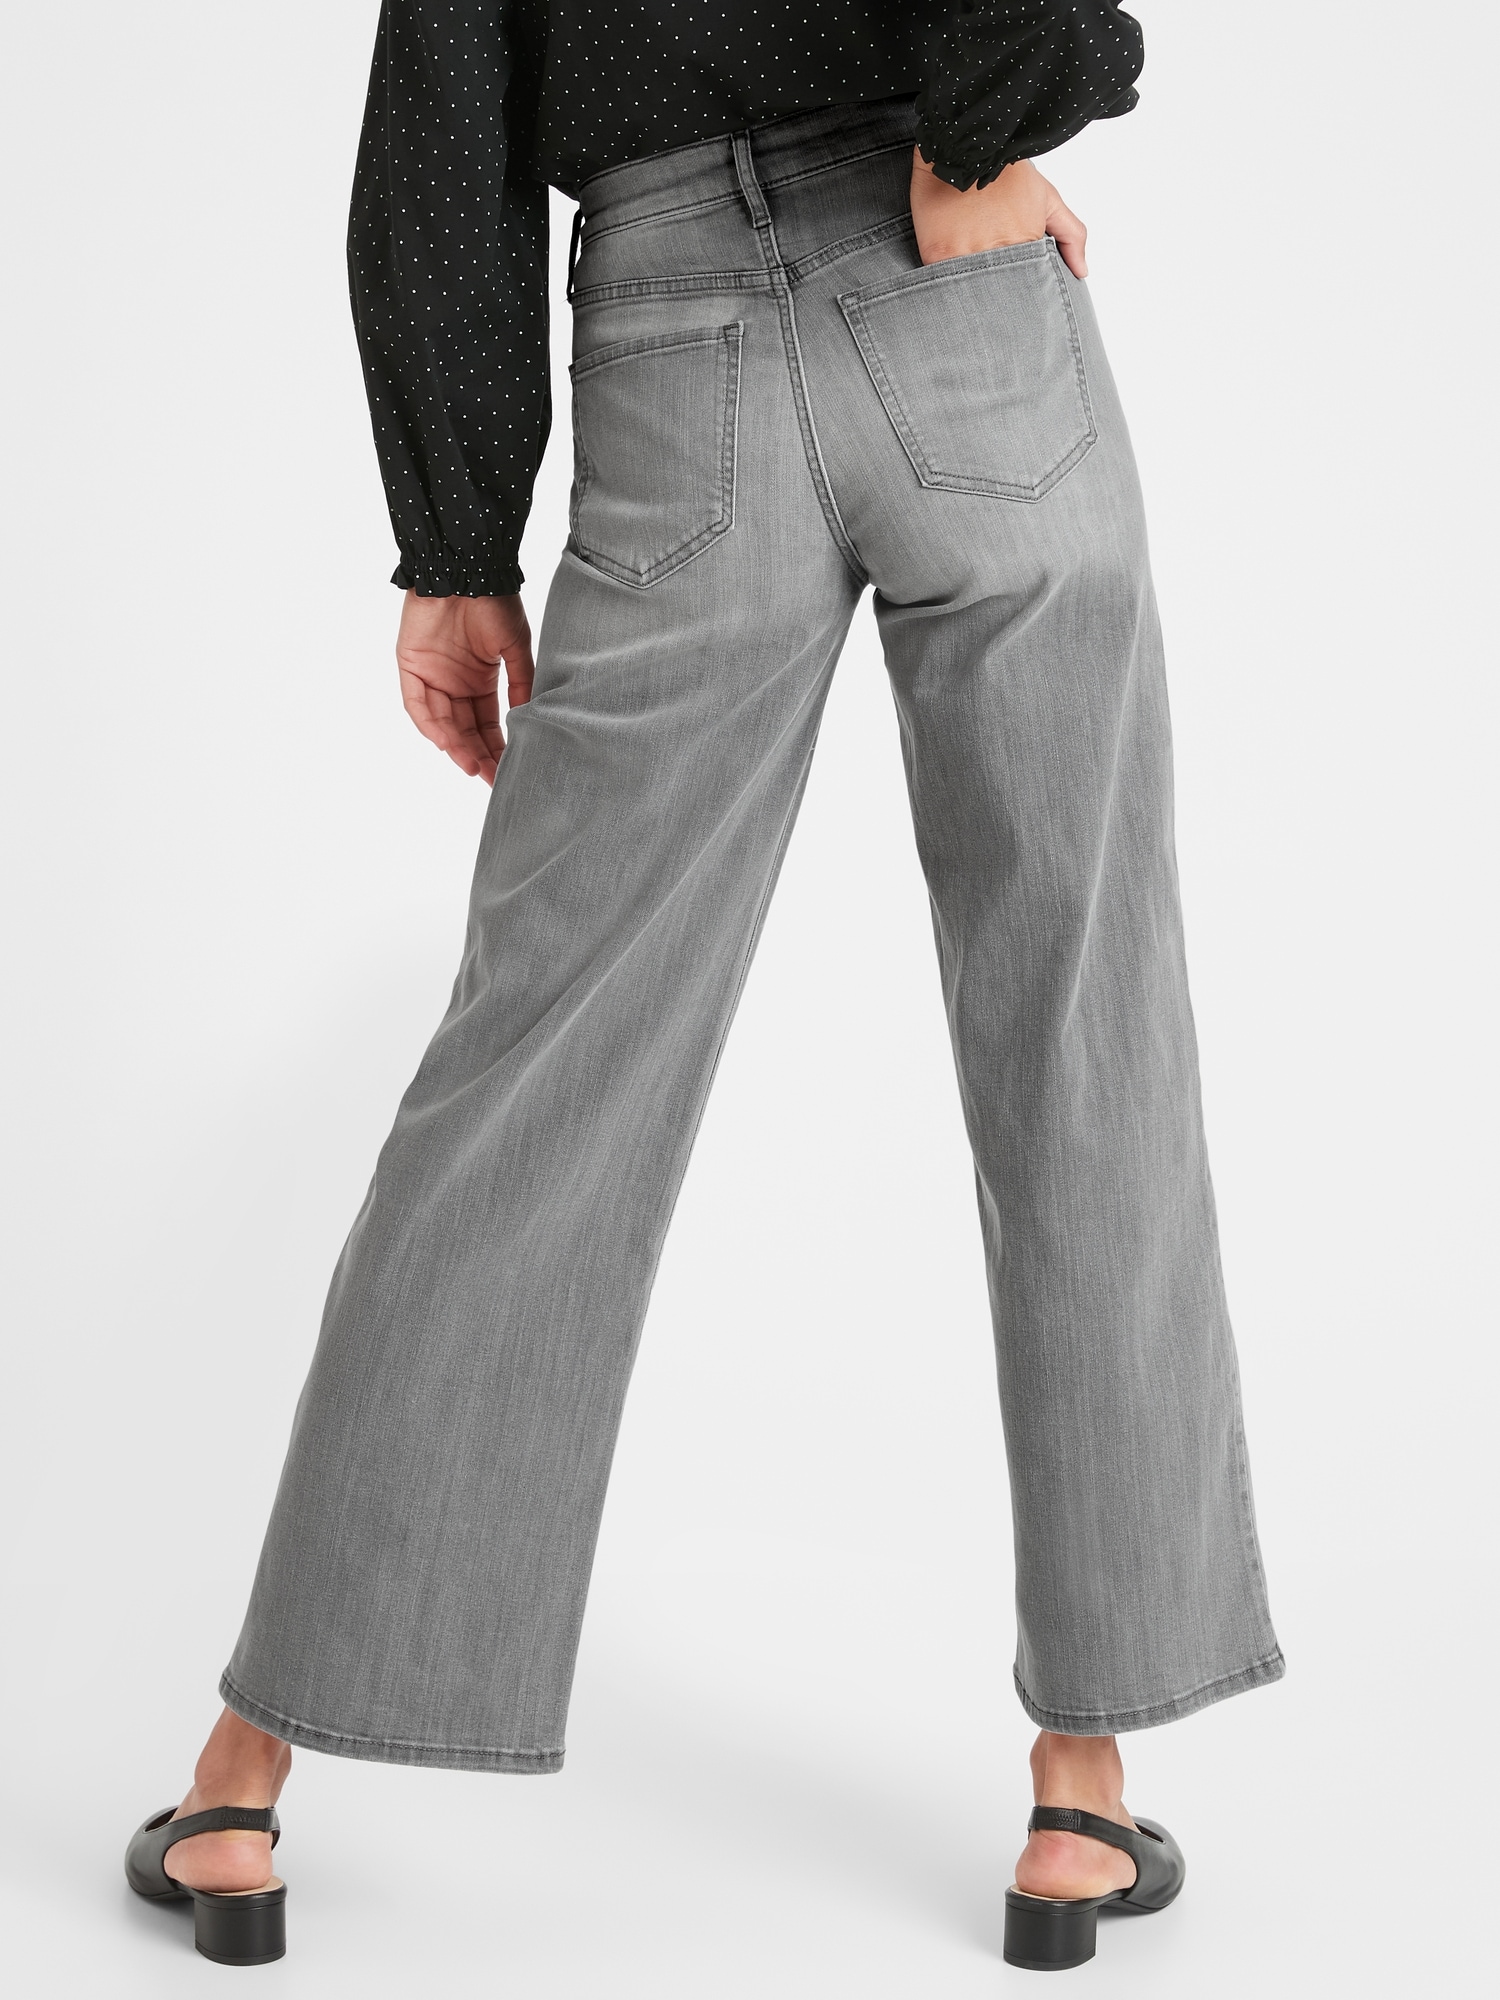 grey wide leg jeans